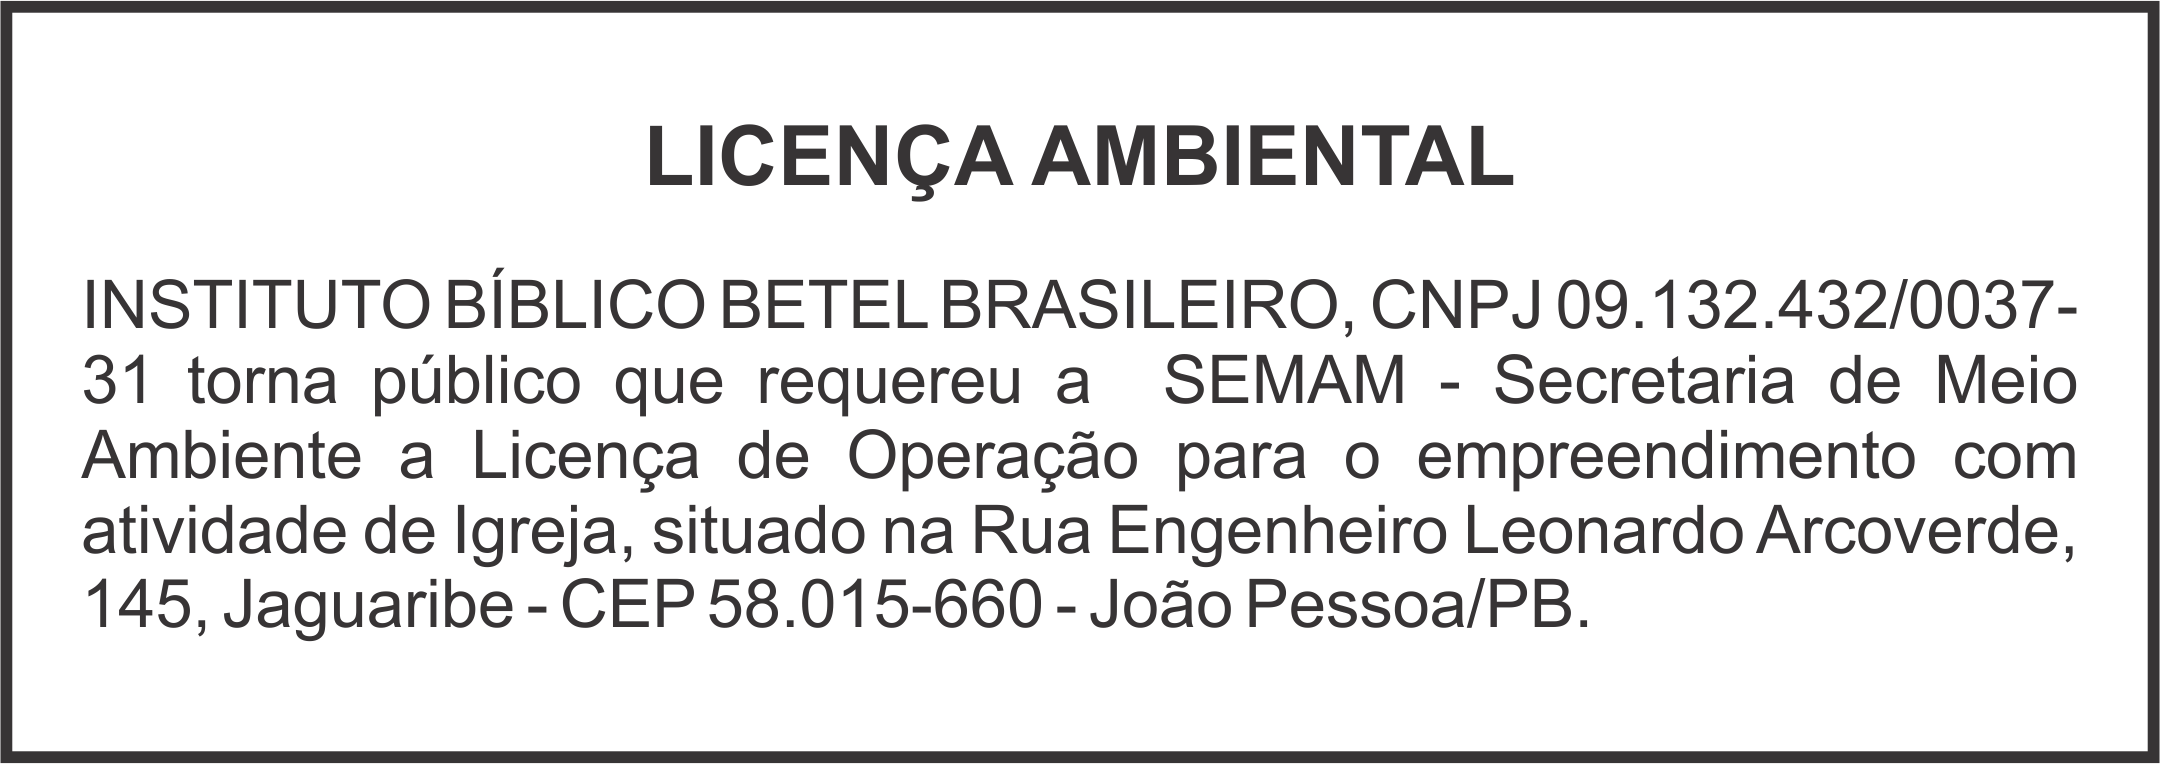 INSTITUTO BÍBLICO BETEL BRASILEIRO – LICENÇA DE OPERAÇÃO